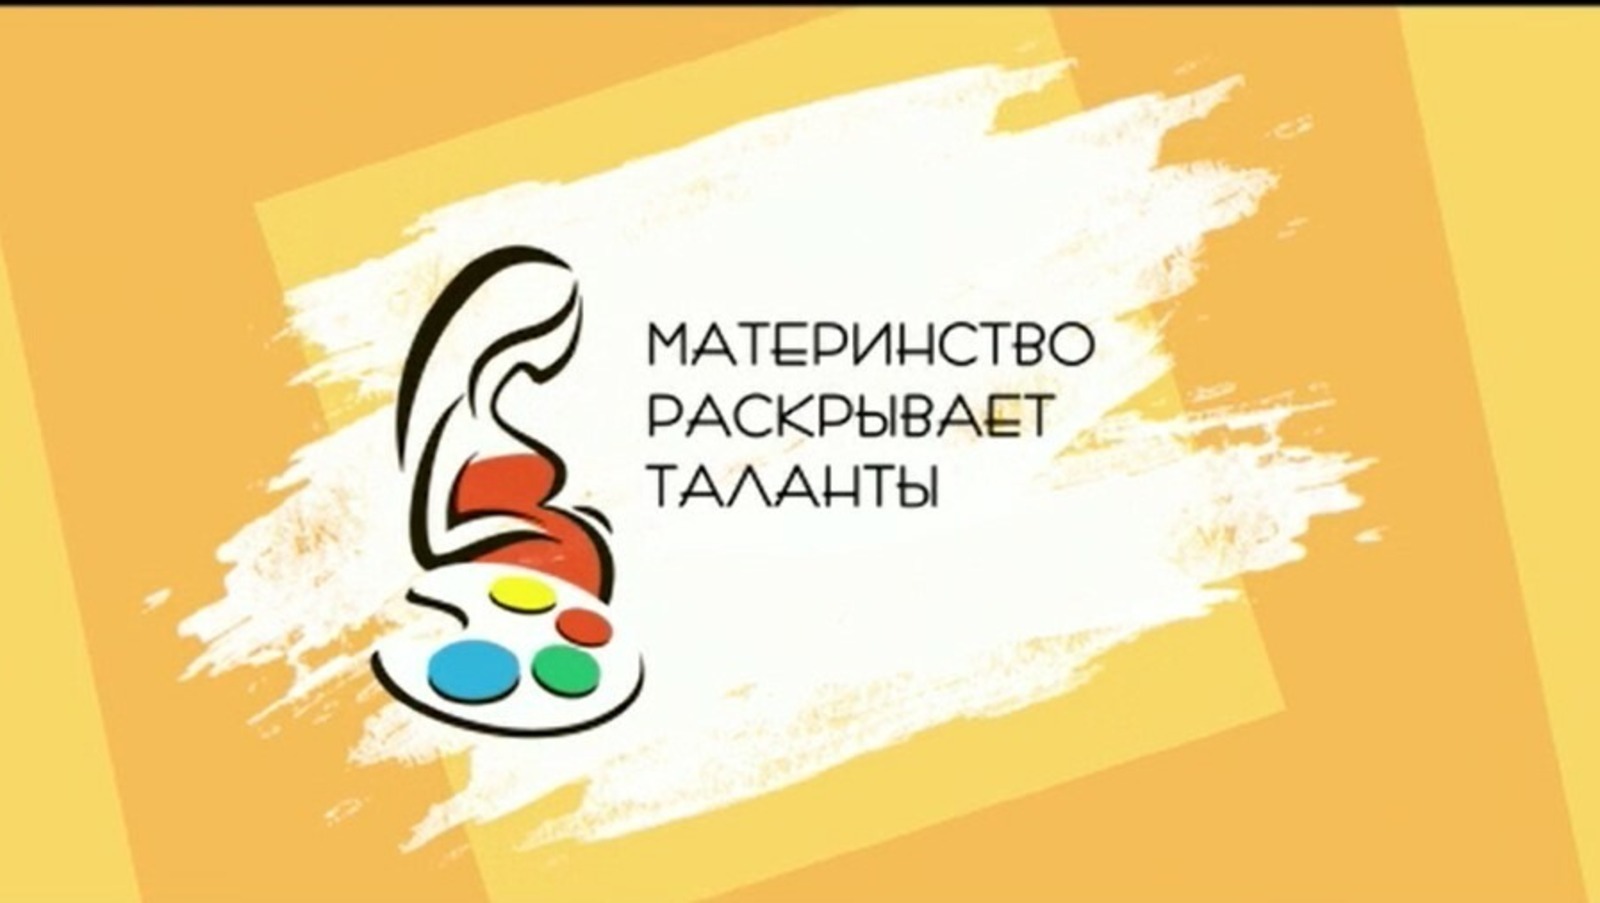 В Башкирии стартовал приём заявок на творческий вернисаж «Материнство раскрывает таланты»!